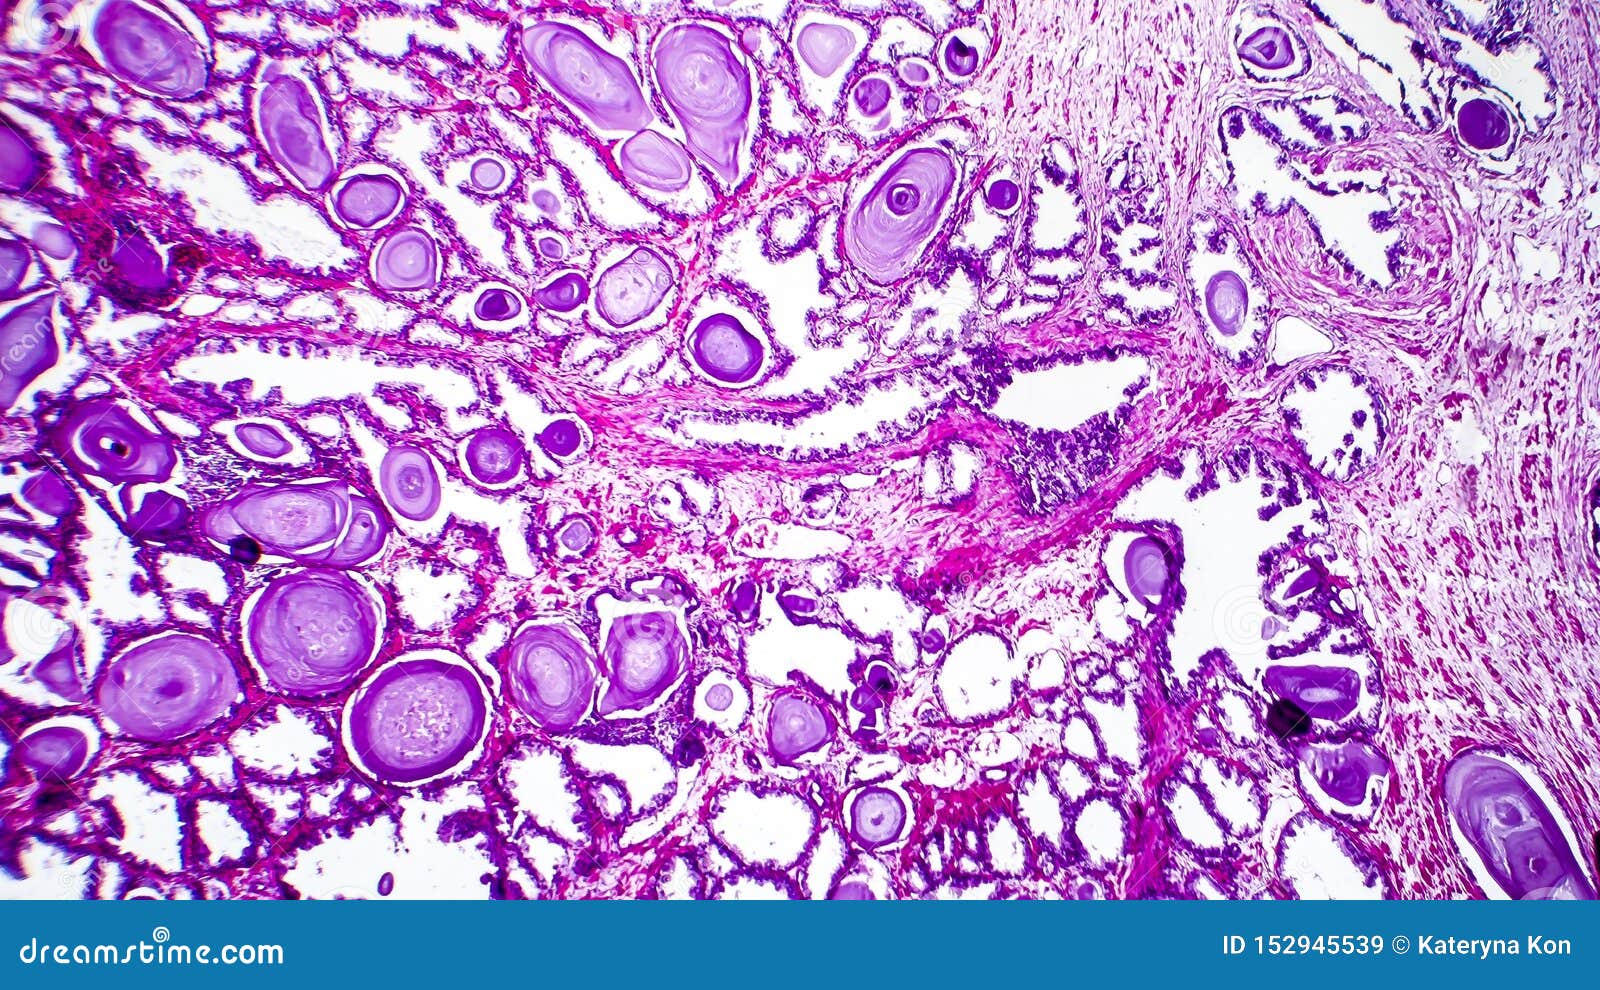 Микроскопическое исследование предстательной железы. Патогистология рисунки. Предстательная железа через микроскоп. Лецитиновые зерна в секрете предстательной железы.